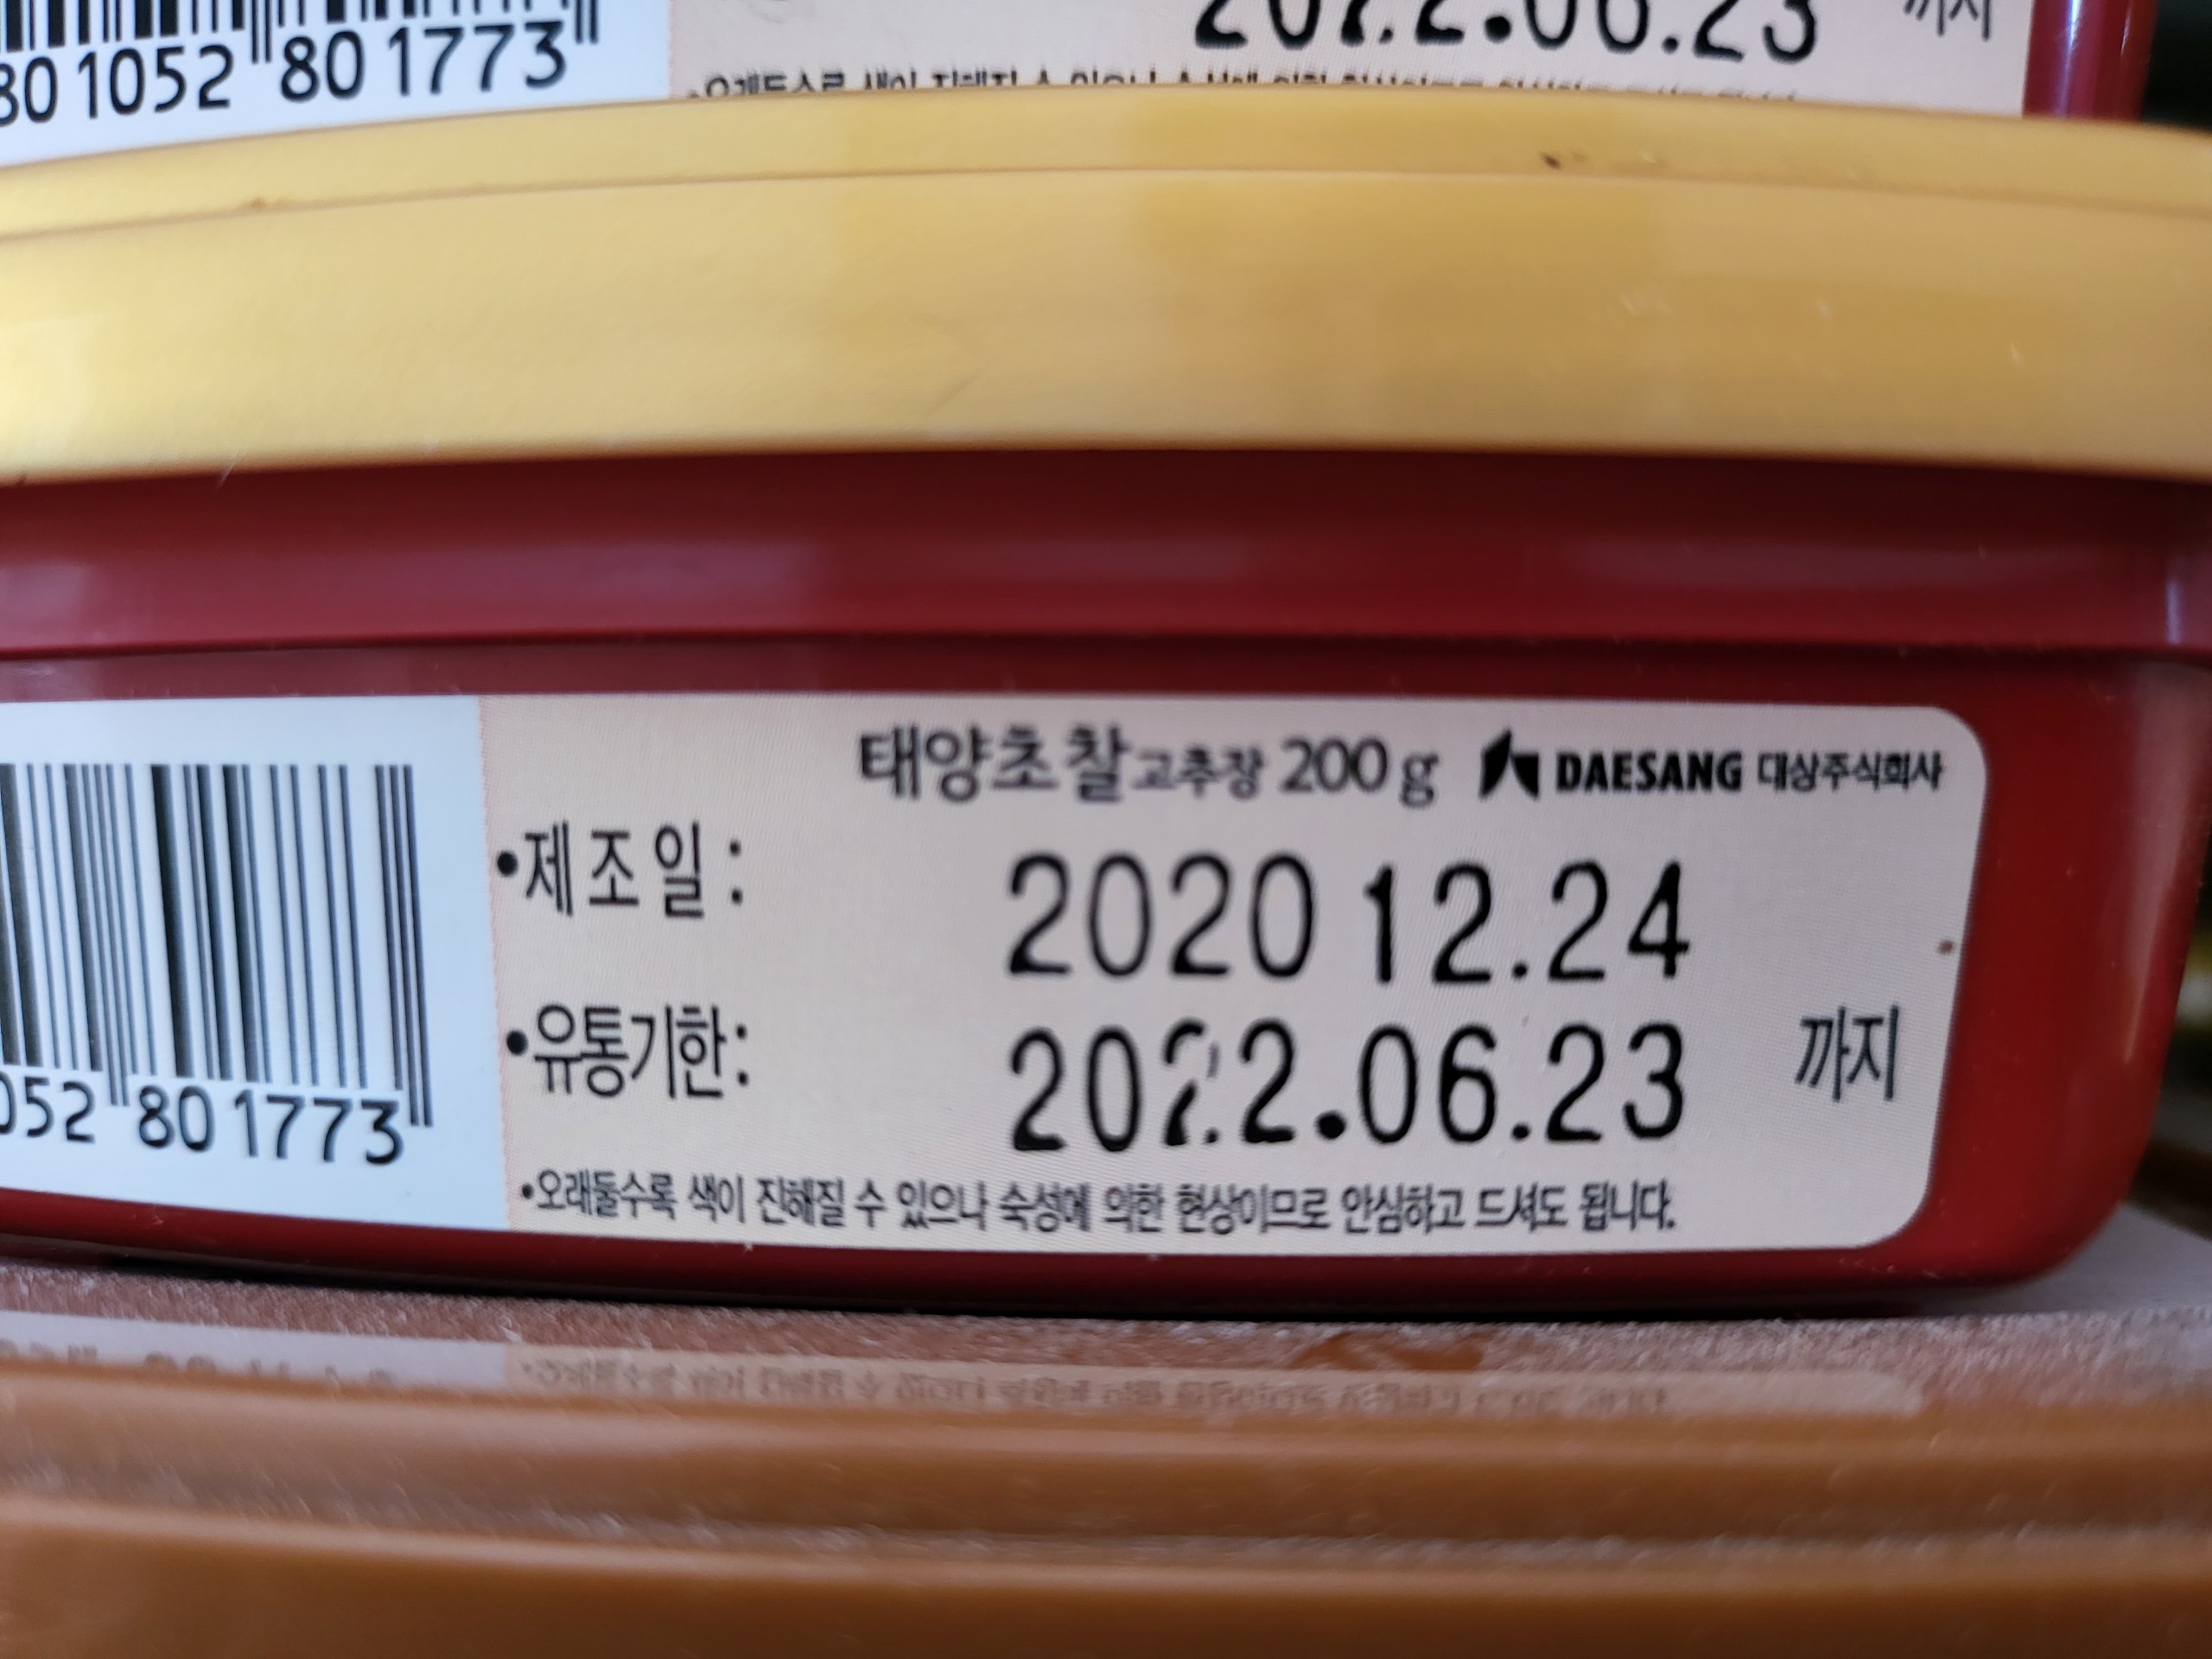 Hsd exp 23 6 2022 hộp nhỏ 200g đỏ tương ớt gạo lứt hàn quốc daesang korea - ảnh sản phẩm 3